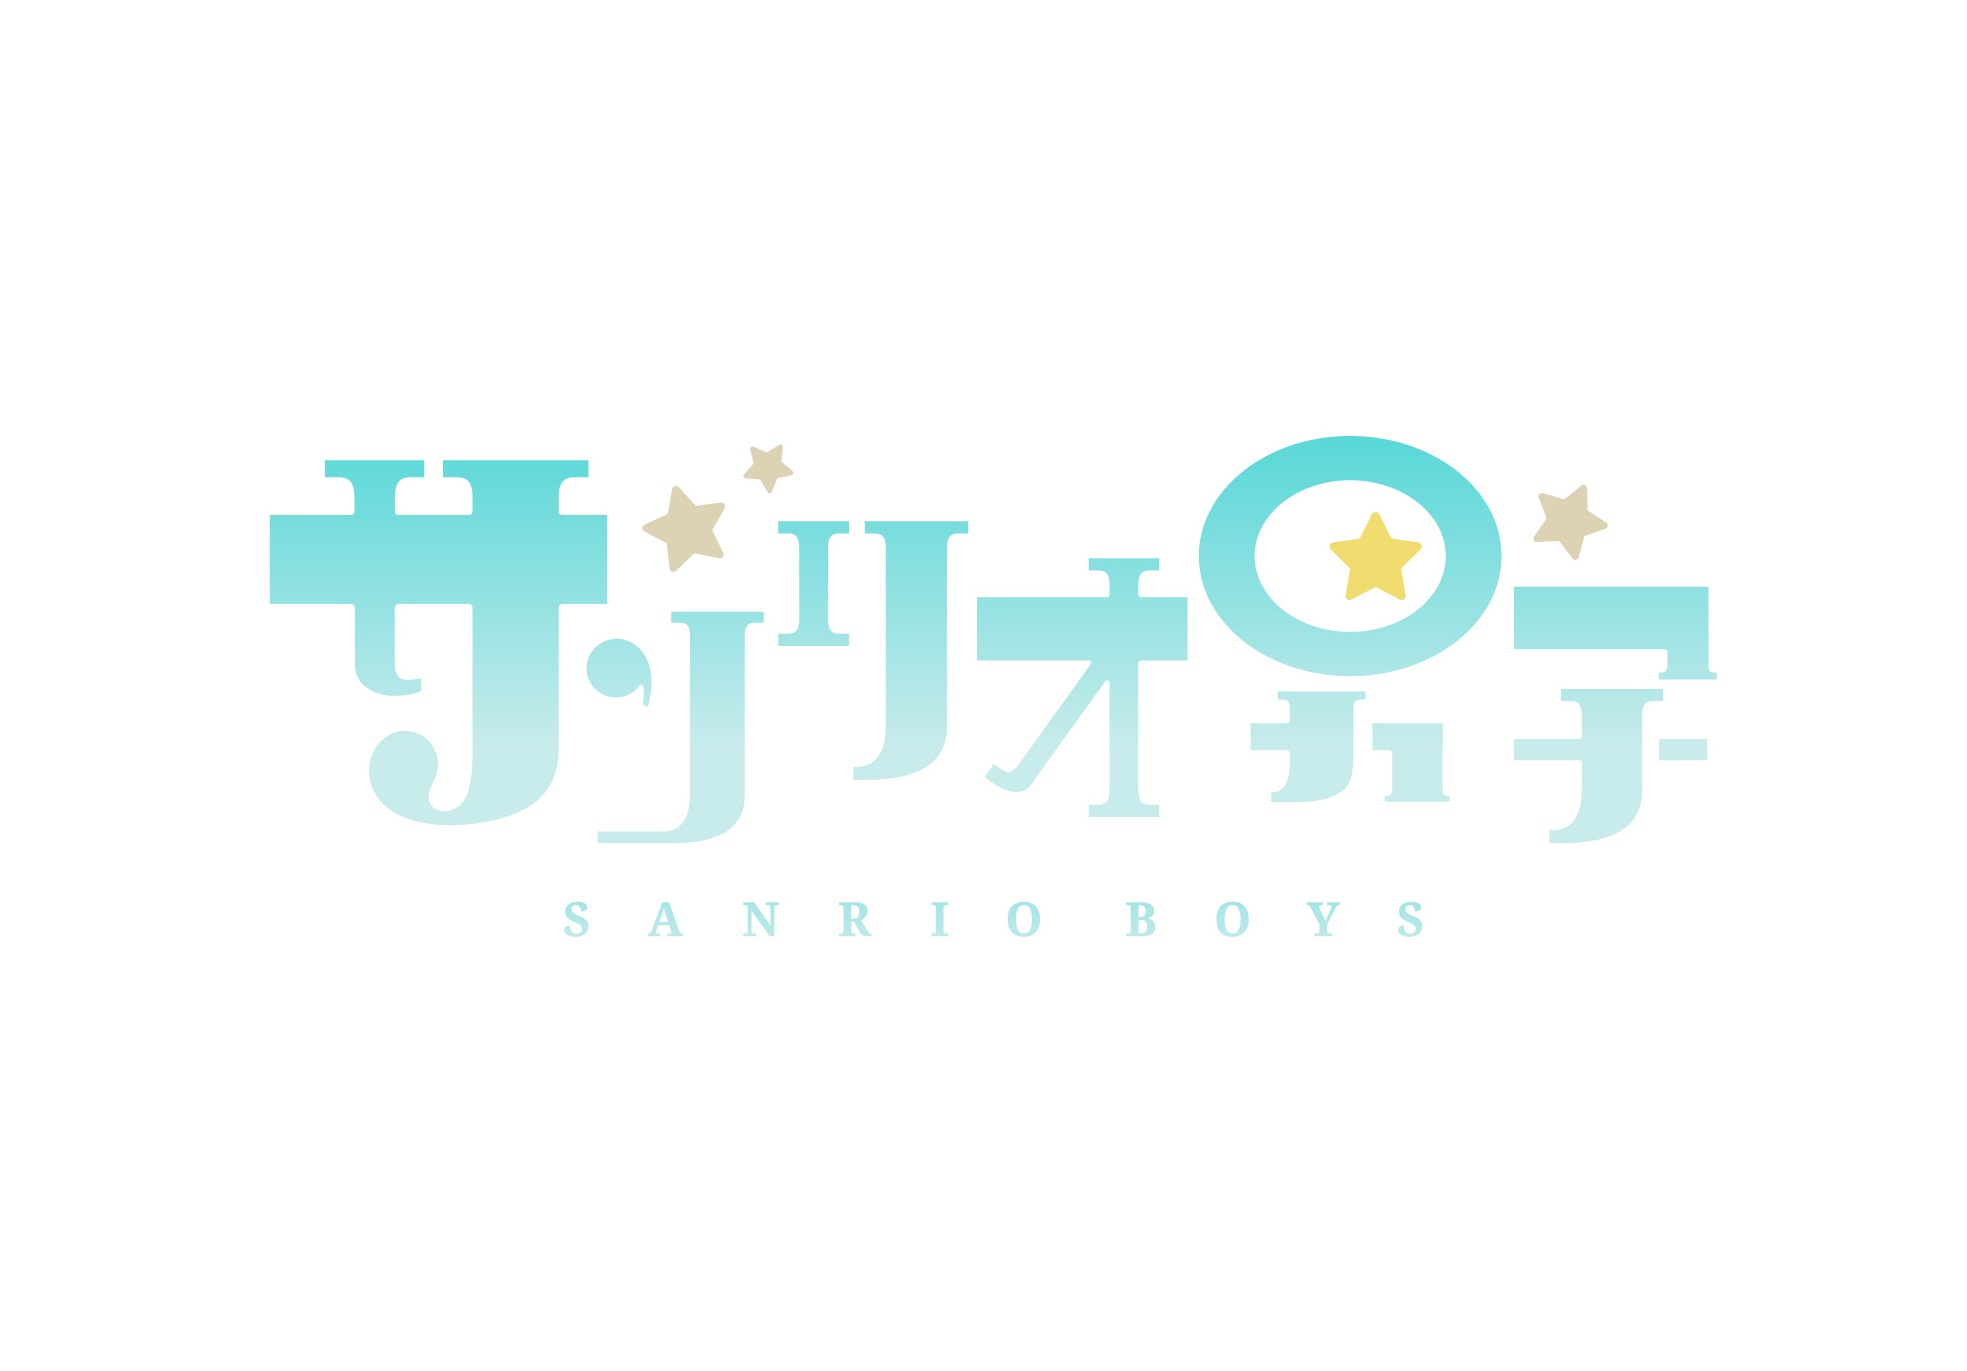 『サンリオ男子』アニメジャパンポニーキャニオンステージに出展決定